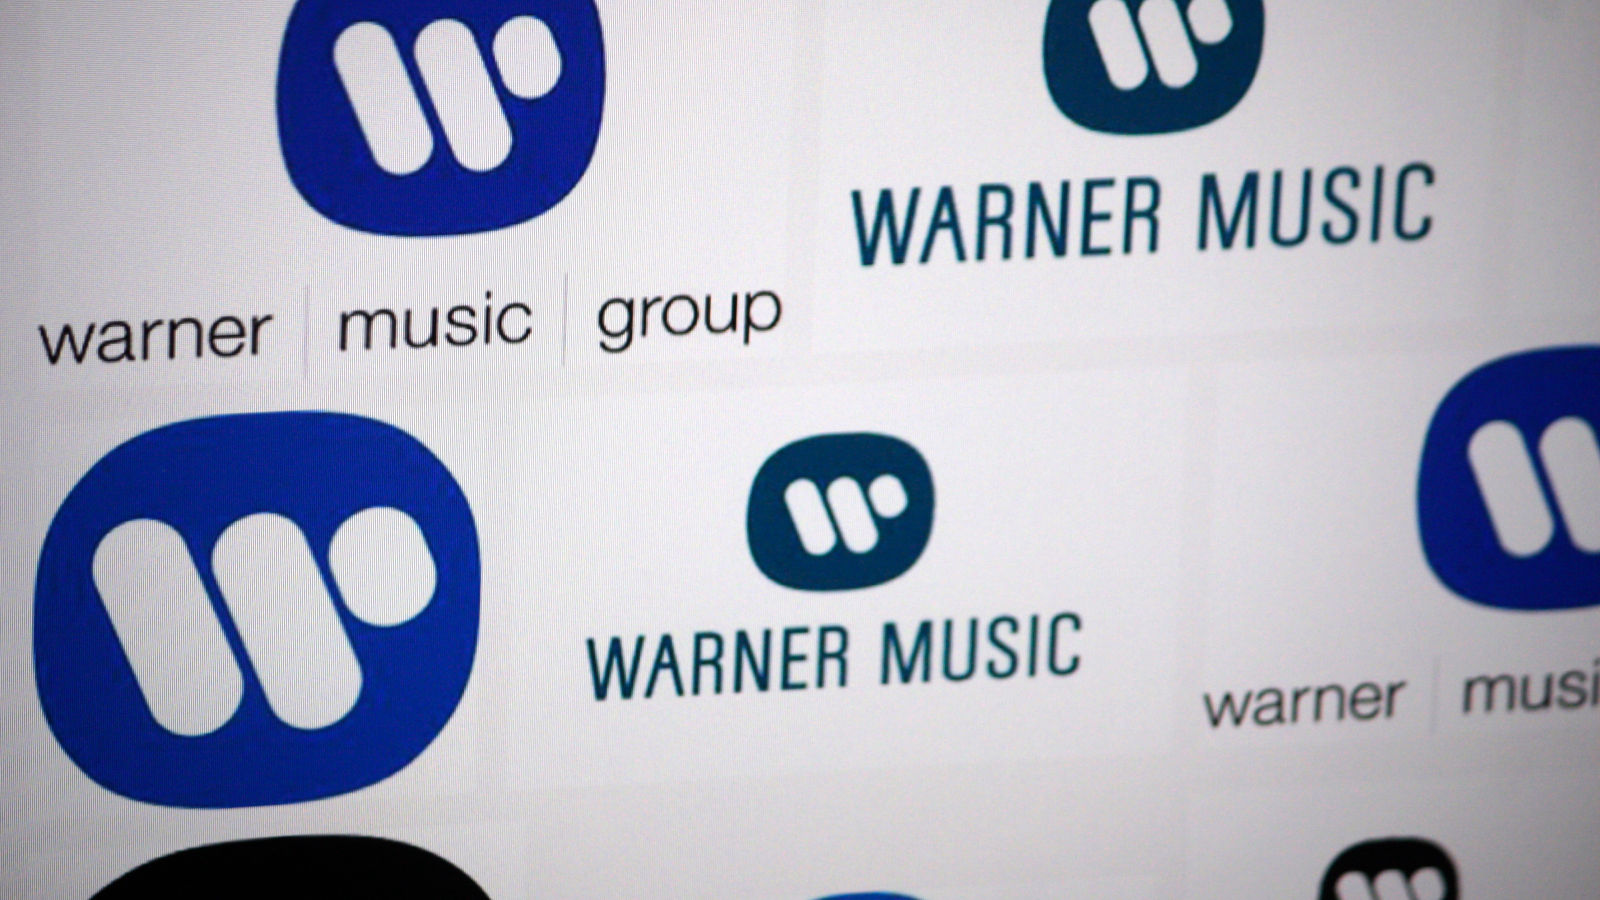 'Warner Music Group' Announced a Credit Card Data Breach ...